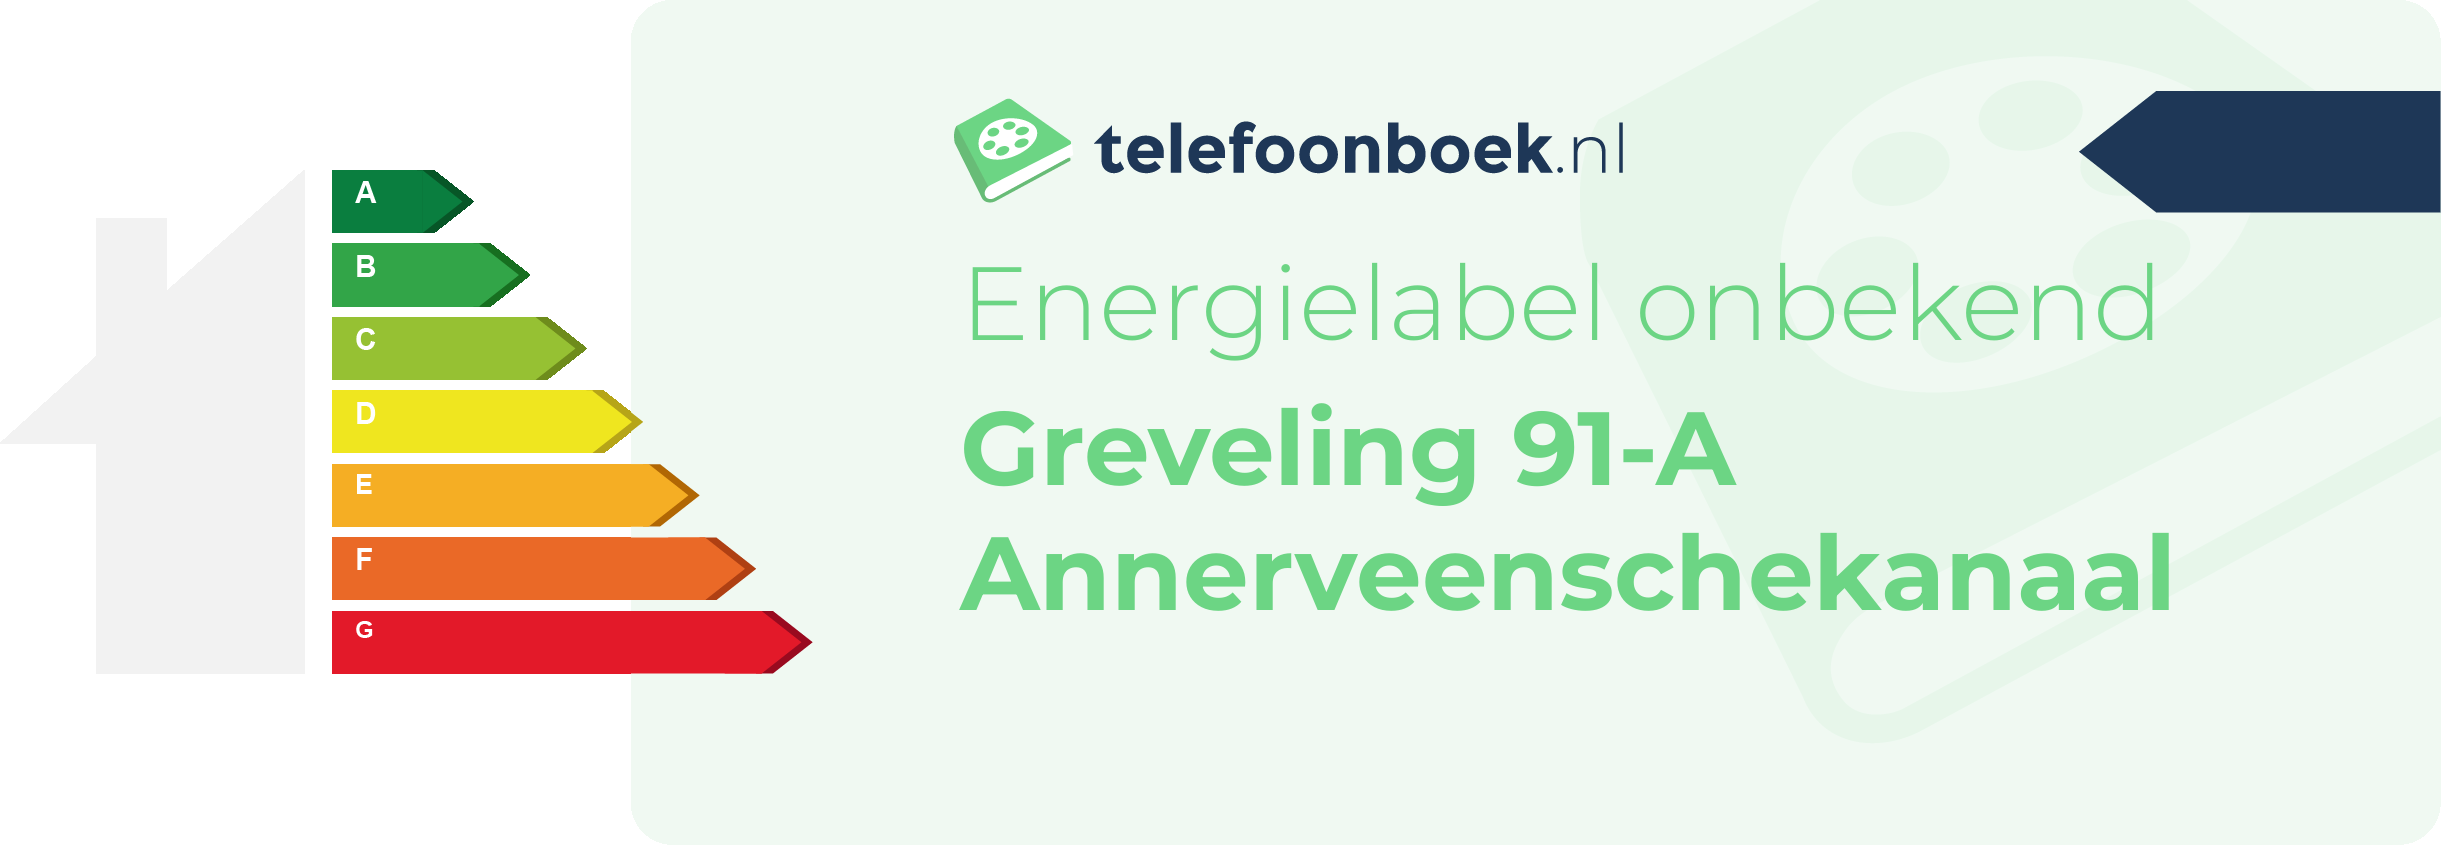 Energielabel Greveling 91-A Annerveenschekanaal